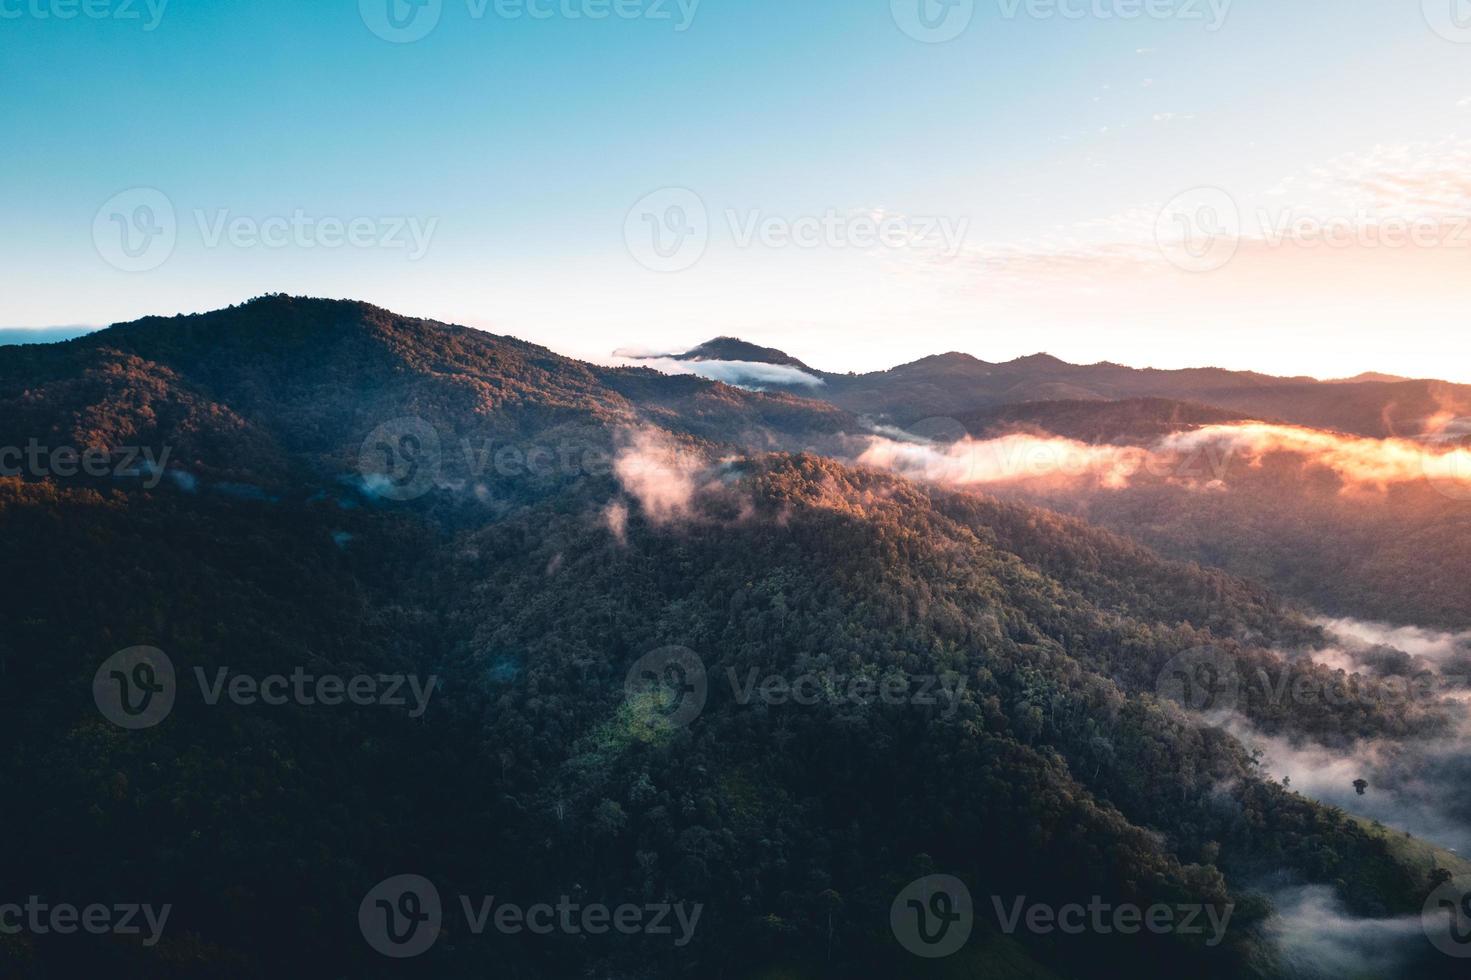 solen går upp i dimman och bergen på morgonen foto